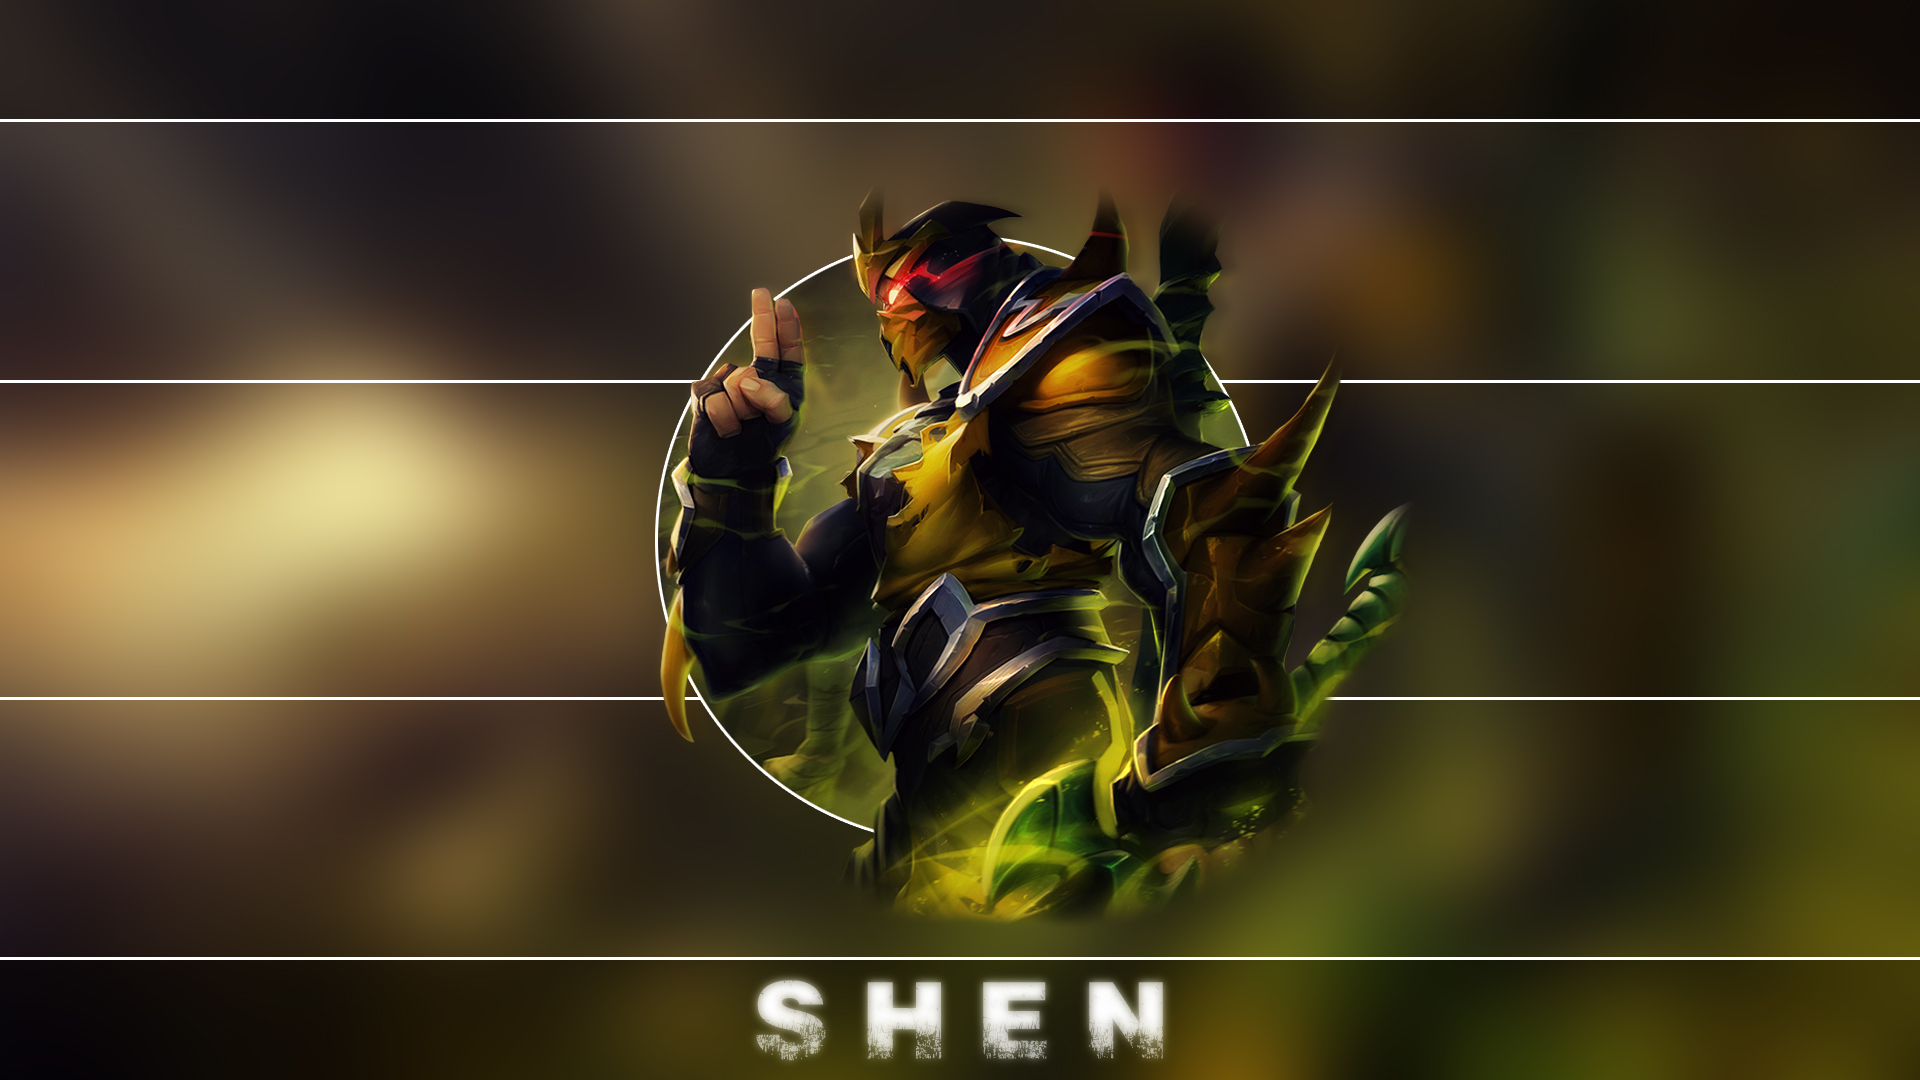 Shen Art Of Lol